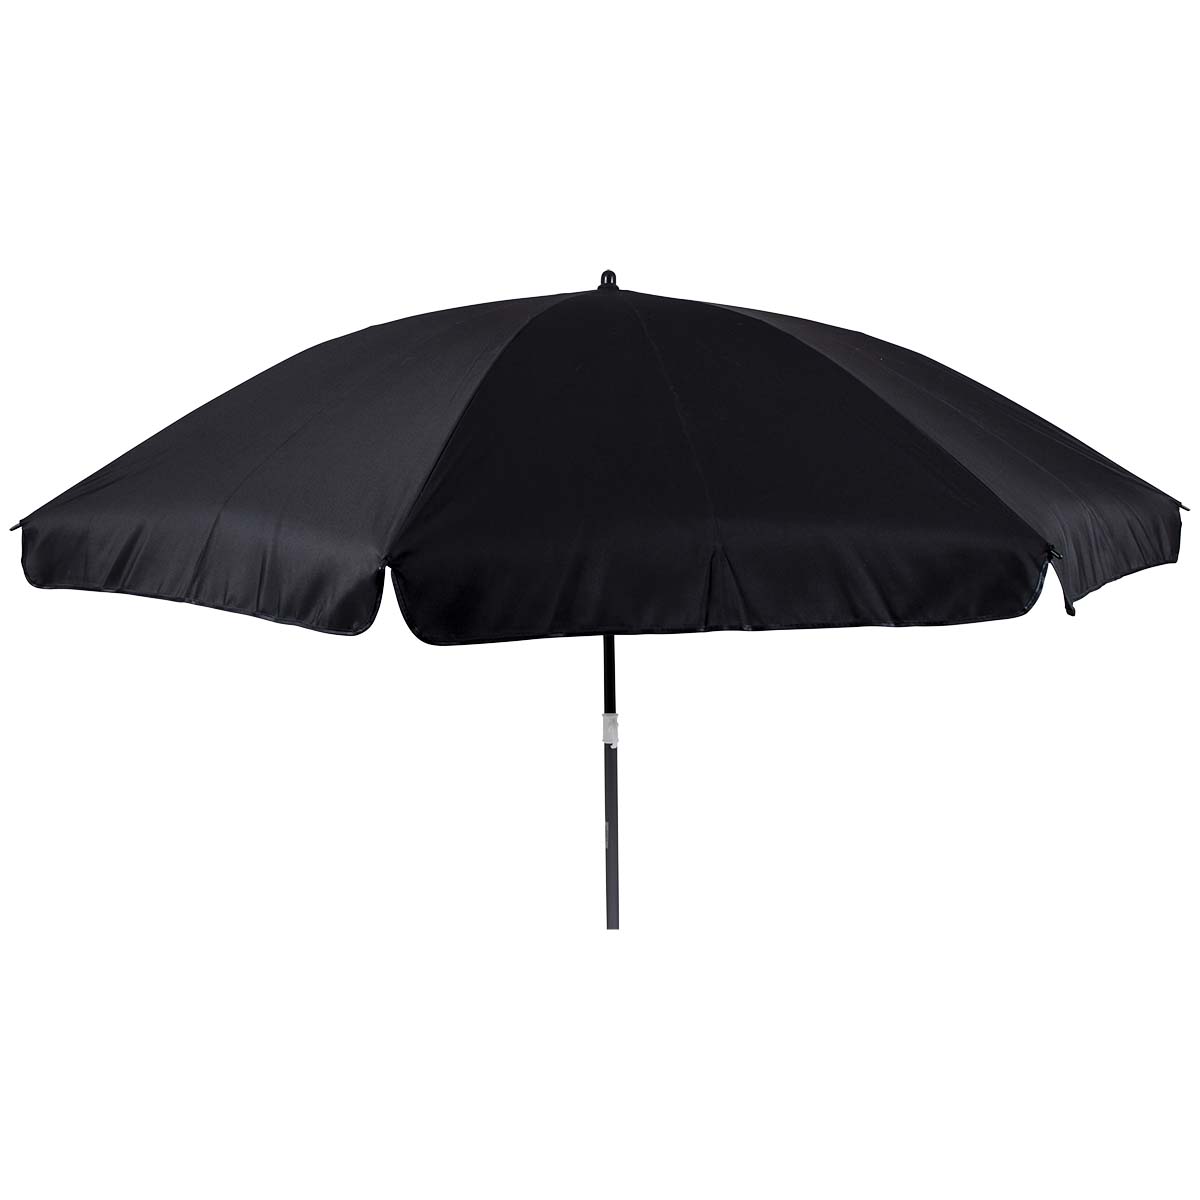 7267236 Een stijlvolle en stevige parasol met stalen frame. Het 160 gr/m² polyester doek biedt bescherming tegen schadelijke zonnestraling. De steel is deelbaar, in hoogte verstelbaar en voorzien van een knikarm zodat het doek richting de zon kan worden gebogen. Gemakkelijk mee te nemen (Ø15x100 cm). De steel van de parasol heeft een diameter van 32 millimeter.